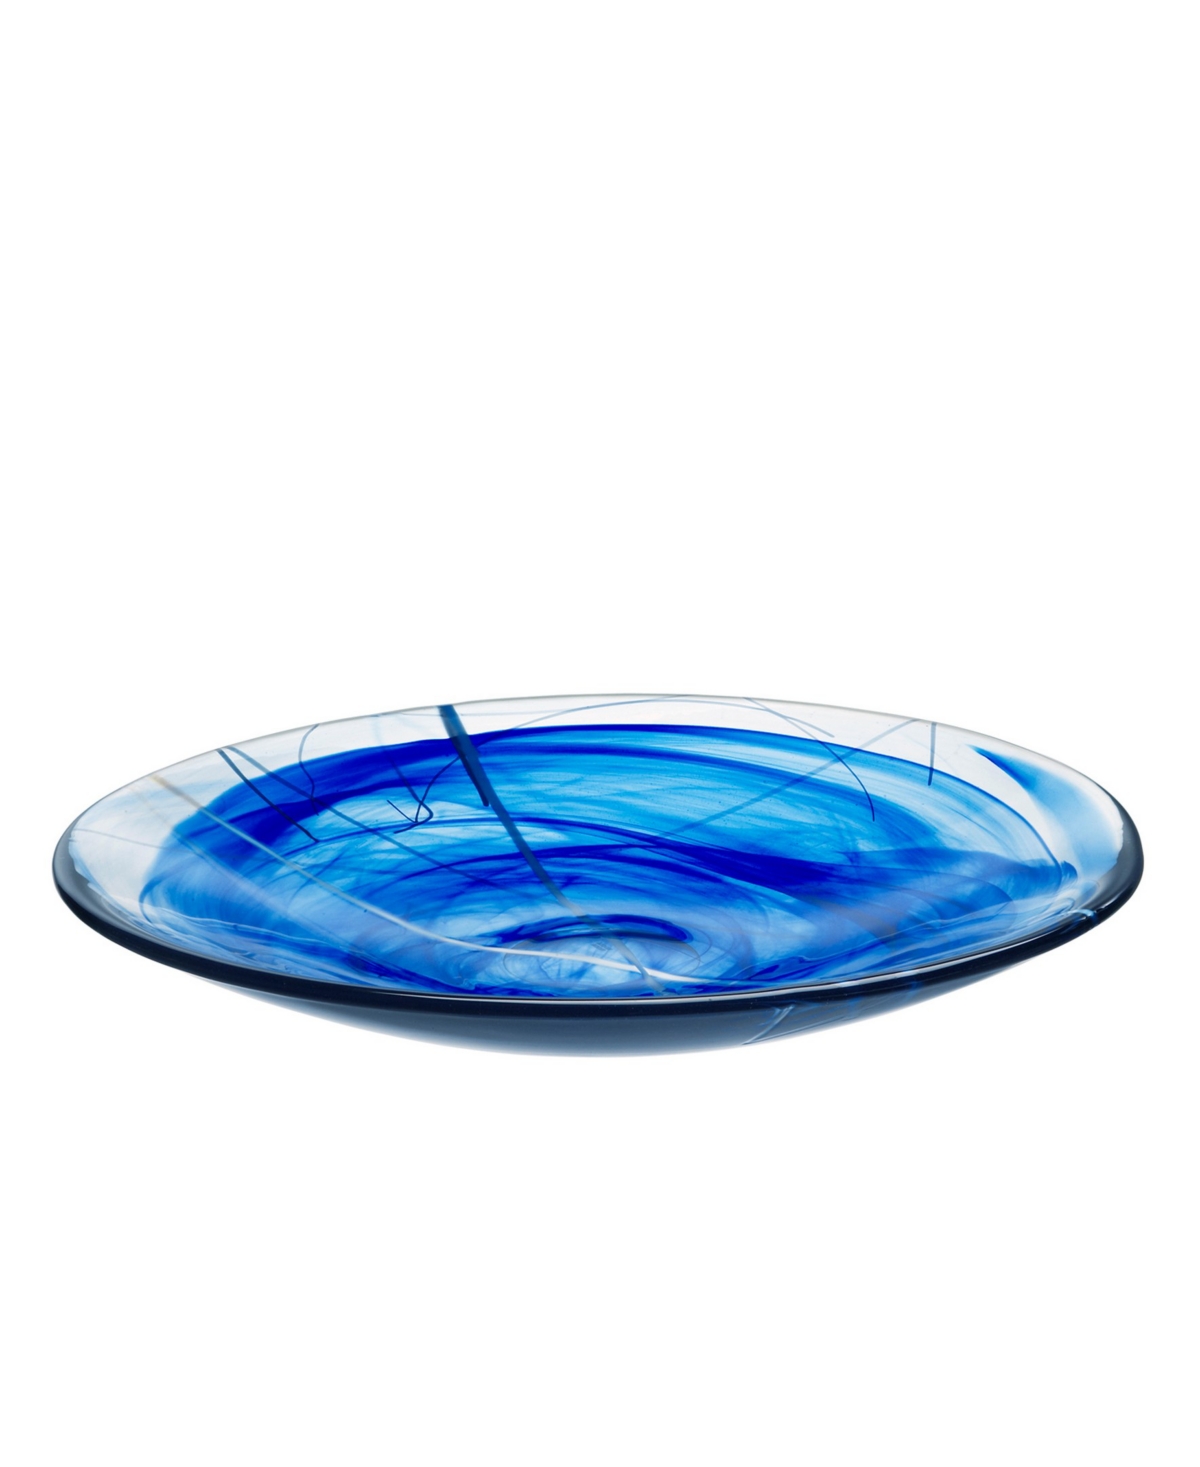 Kosta Boda Contrast Platter In Blue